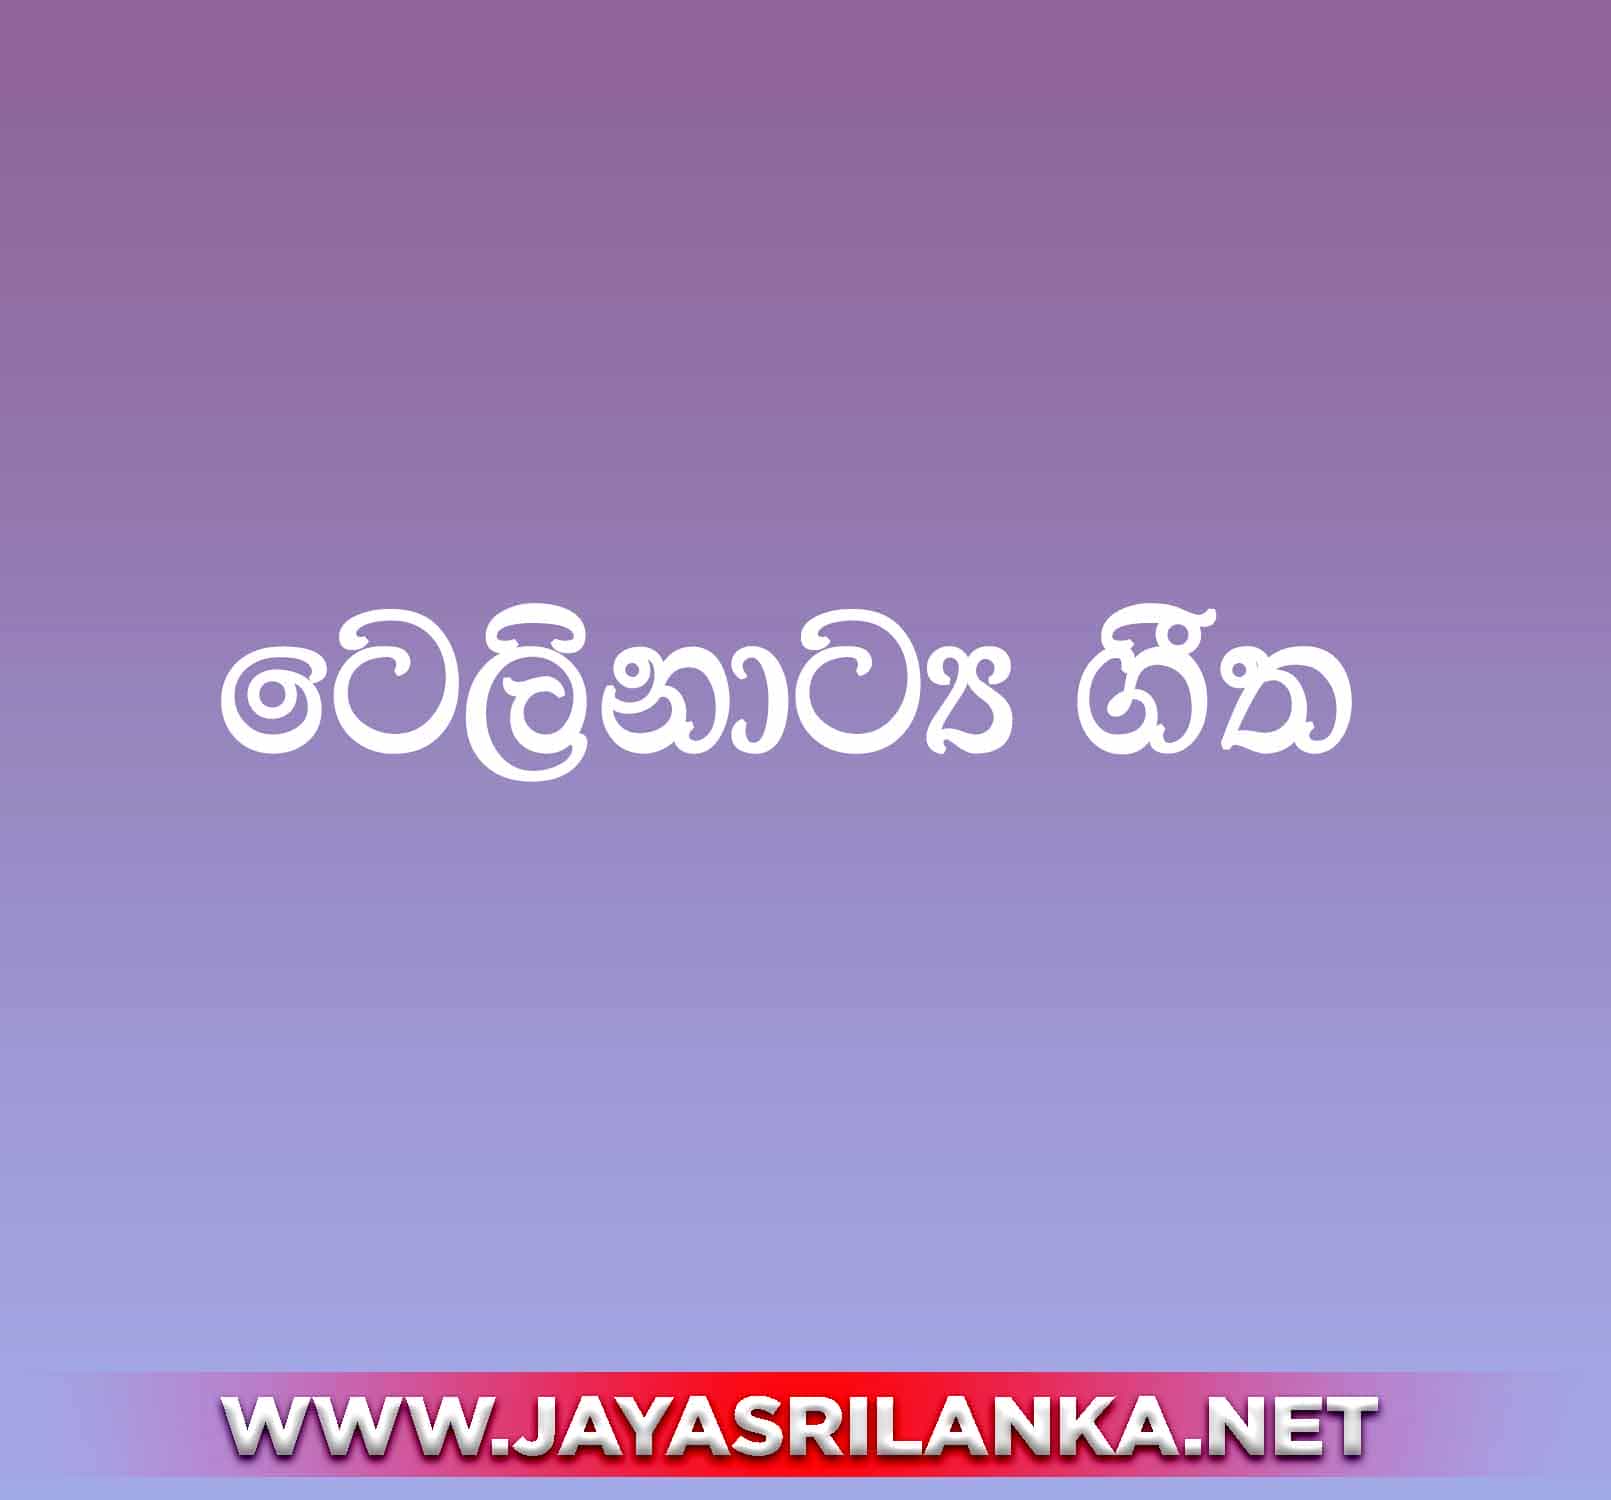 Aa Aa Aa Aa Aaa - Sinhala Teledrama Songs mp3 Image